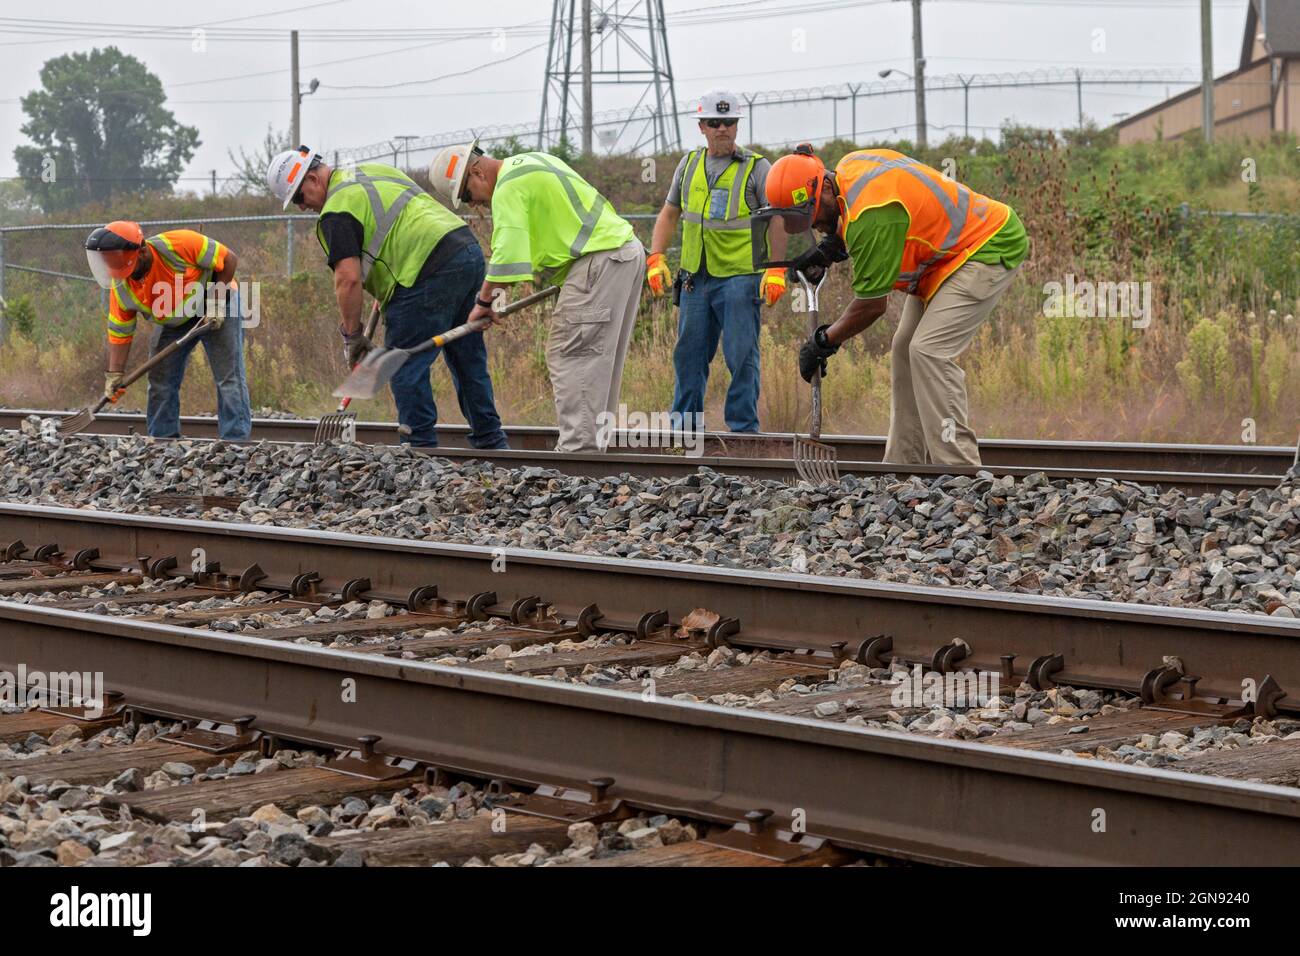 Pontiac, Michigan - Ein Eisenbahnerhaltungsteam arbeitet auf den Gleisen der CN Railroad und reinigt Trümmer, um sich auf die Reparatur der Gleise vorzubereiten. Stockfoto